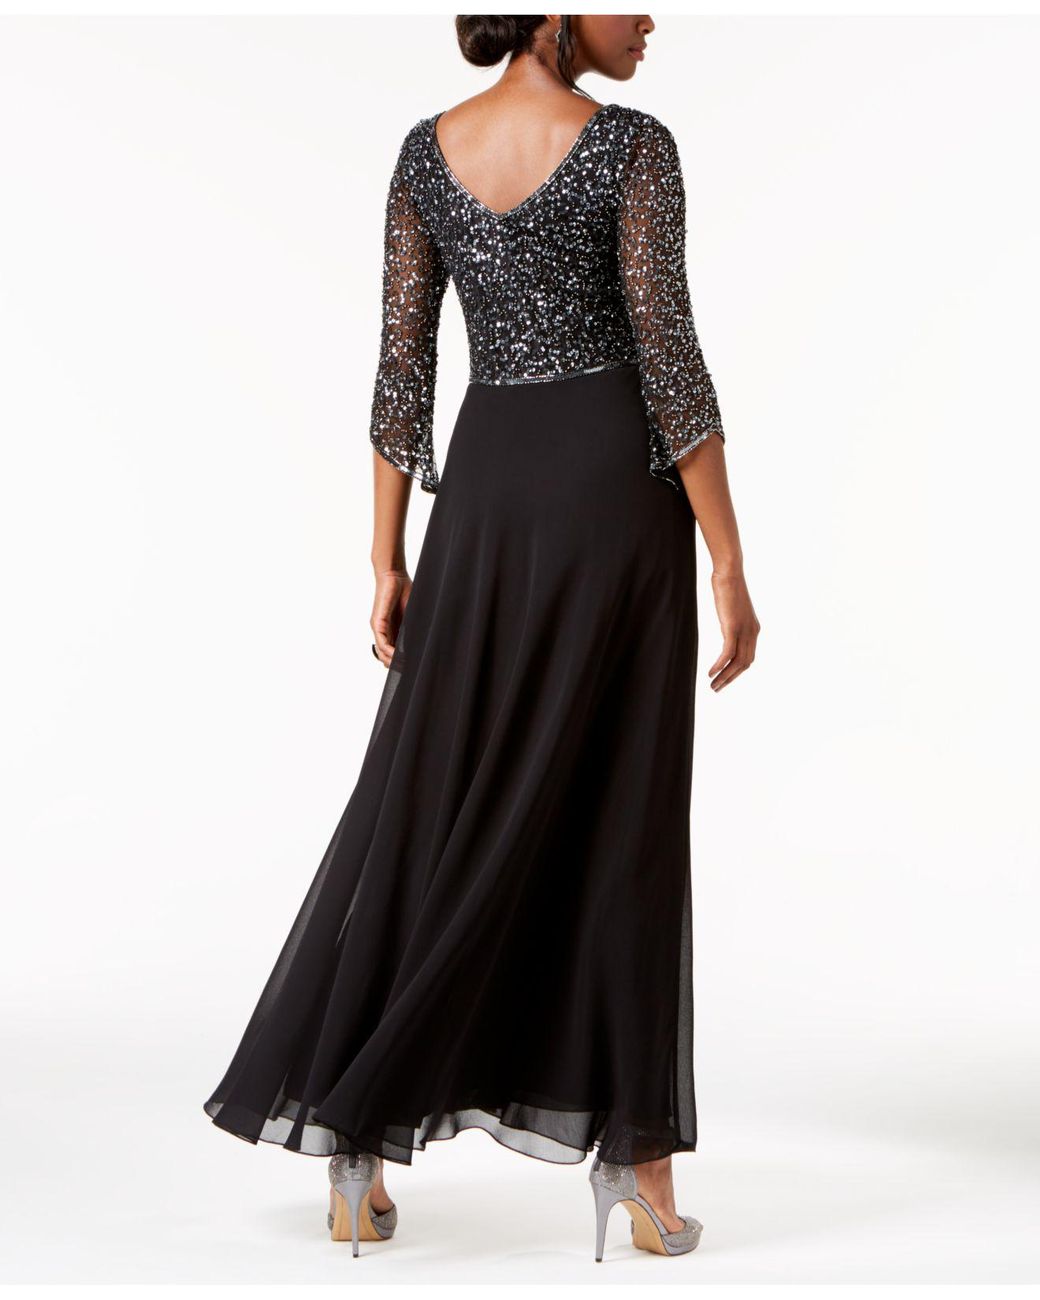 Kara 3/4-sleeve Gown in J Lyst Embellished Black |